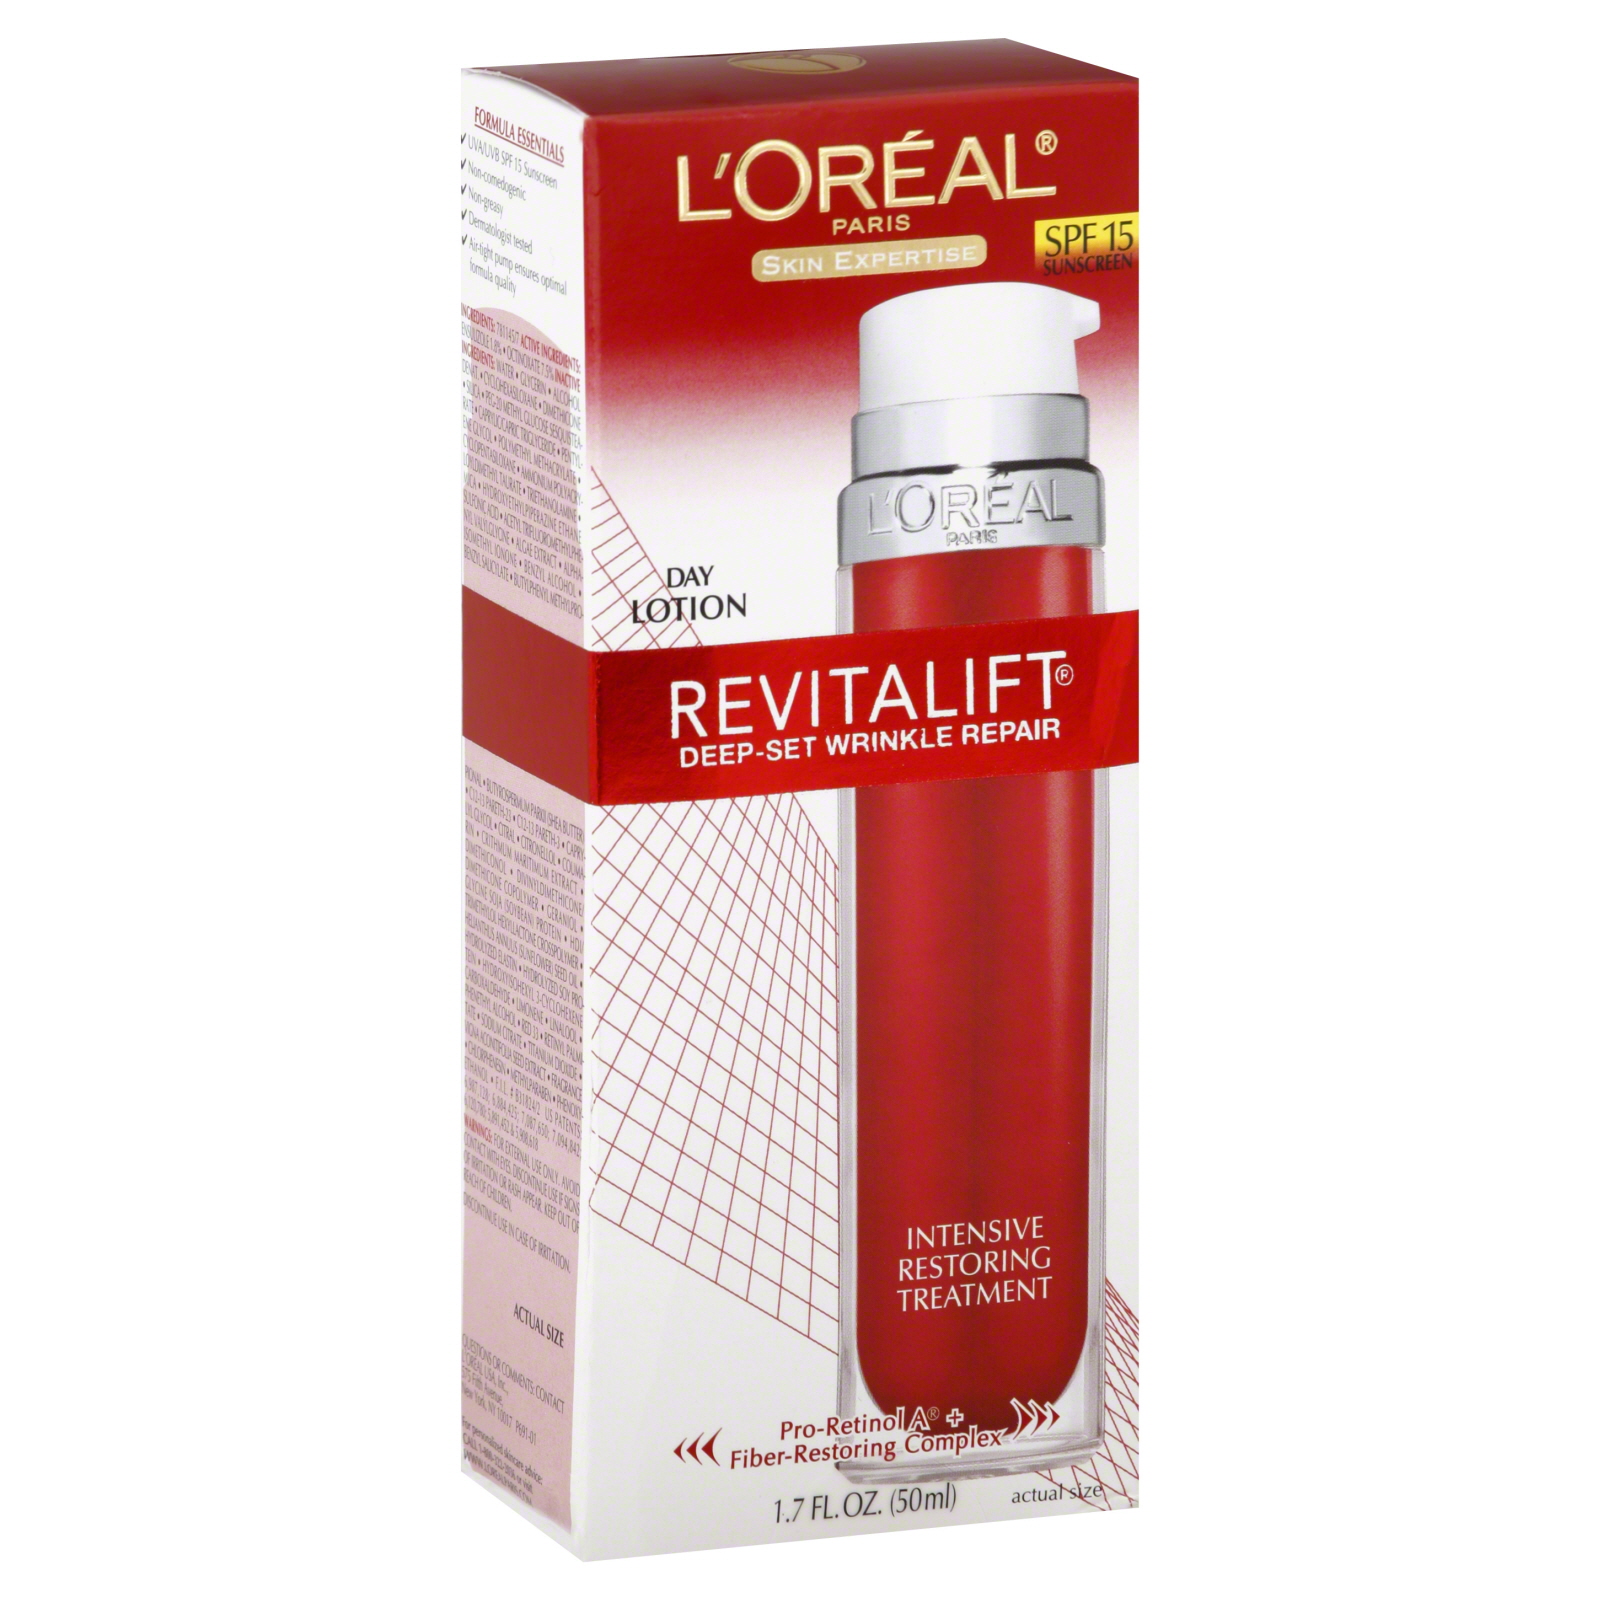 L'Oreal Skin Expertise RevitaLift Day Lotion, SPF 15 Sunscreen, Deep-Set Wrinkle Repair, 1.7 fl oz (50 ml)